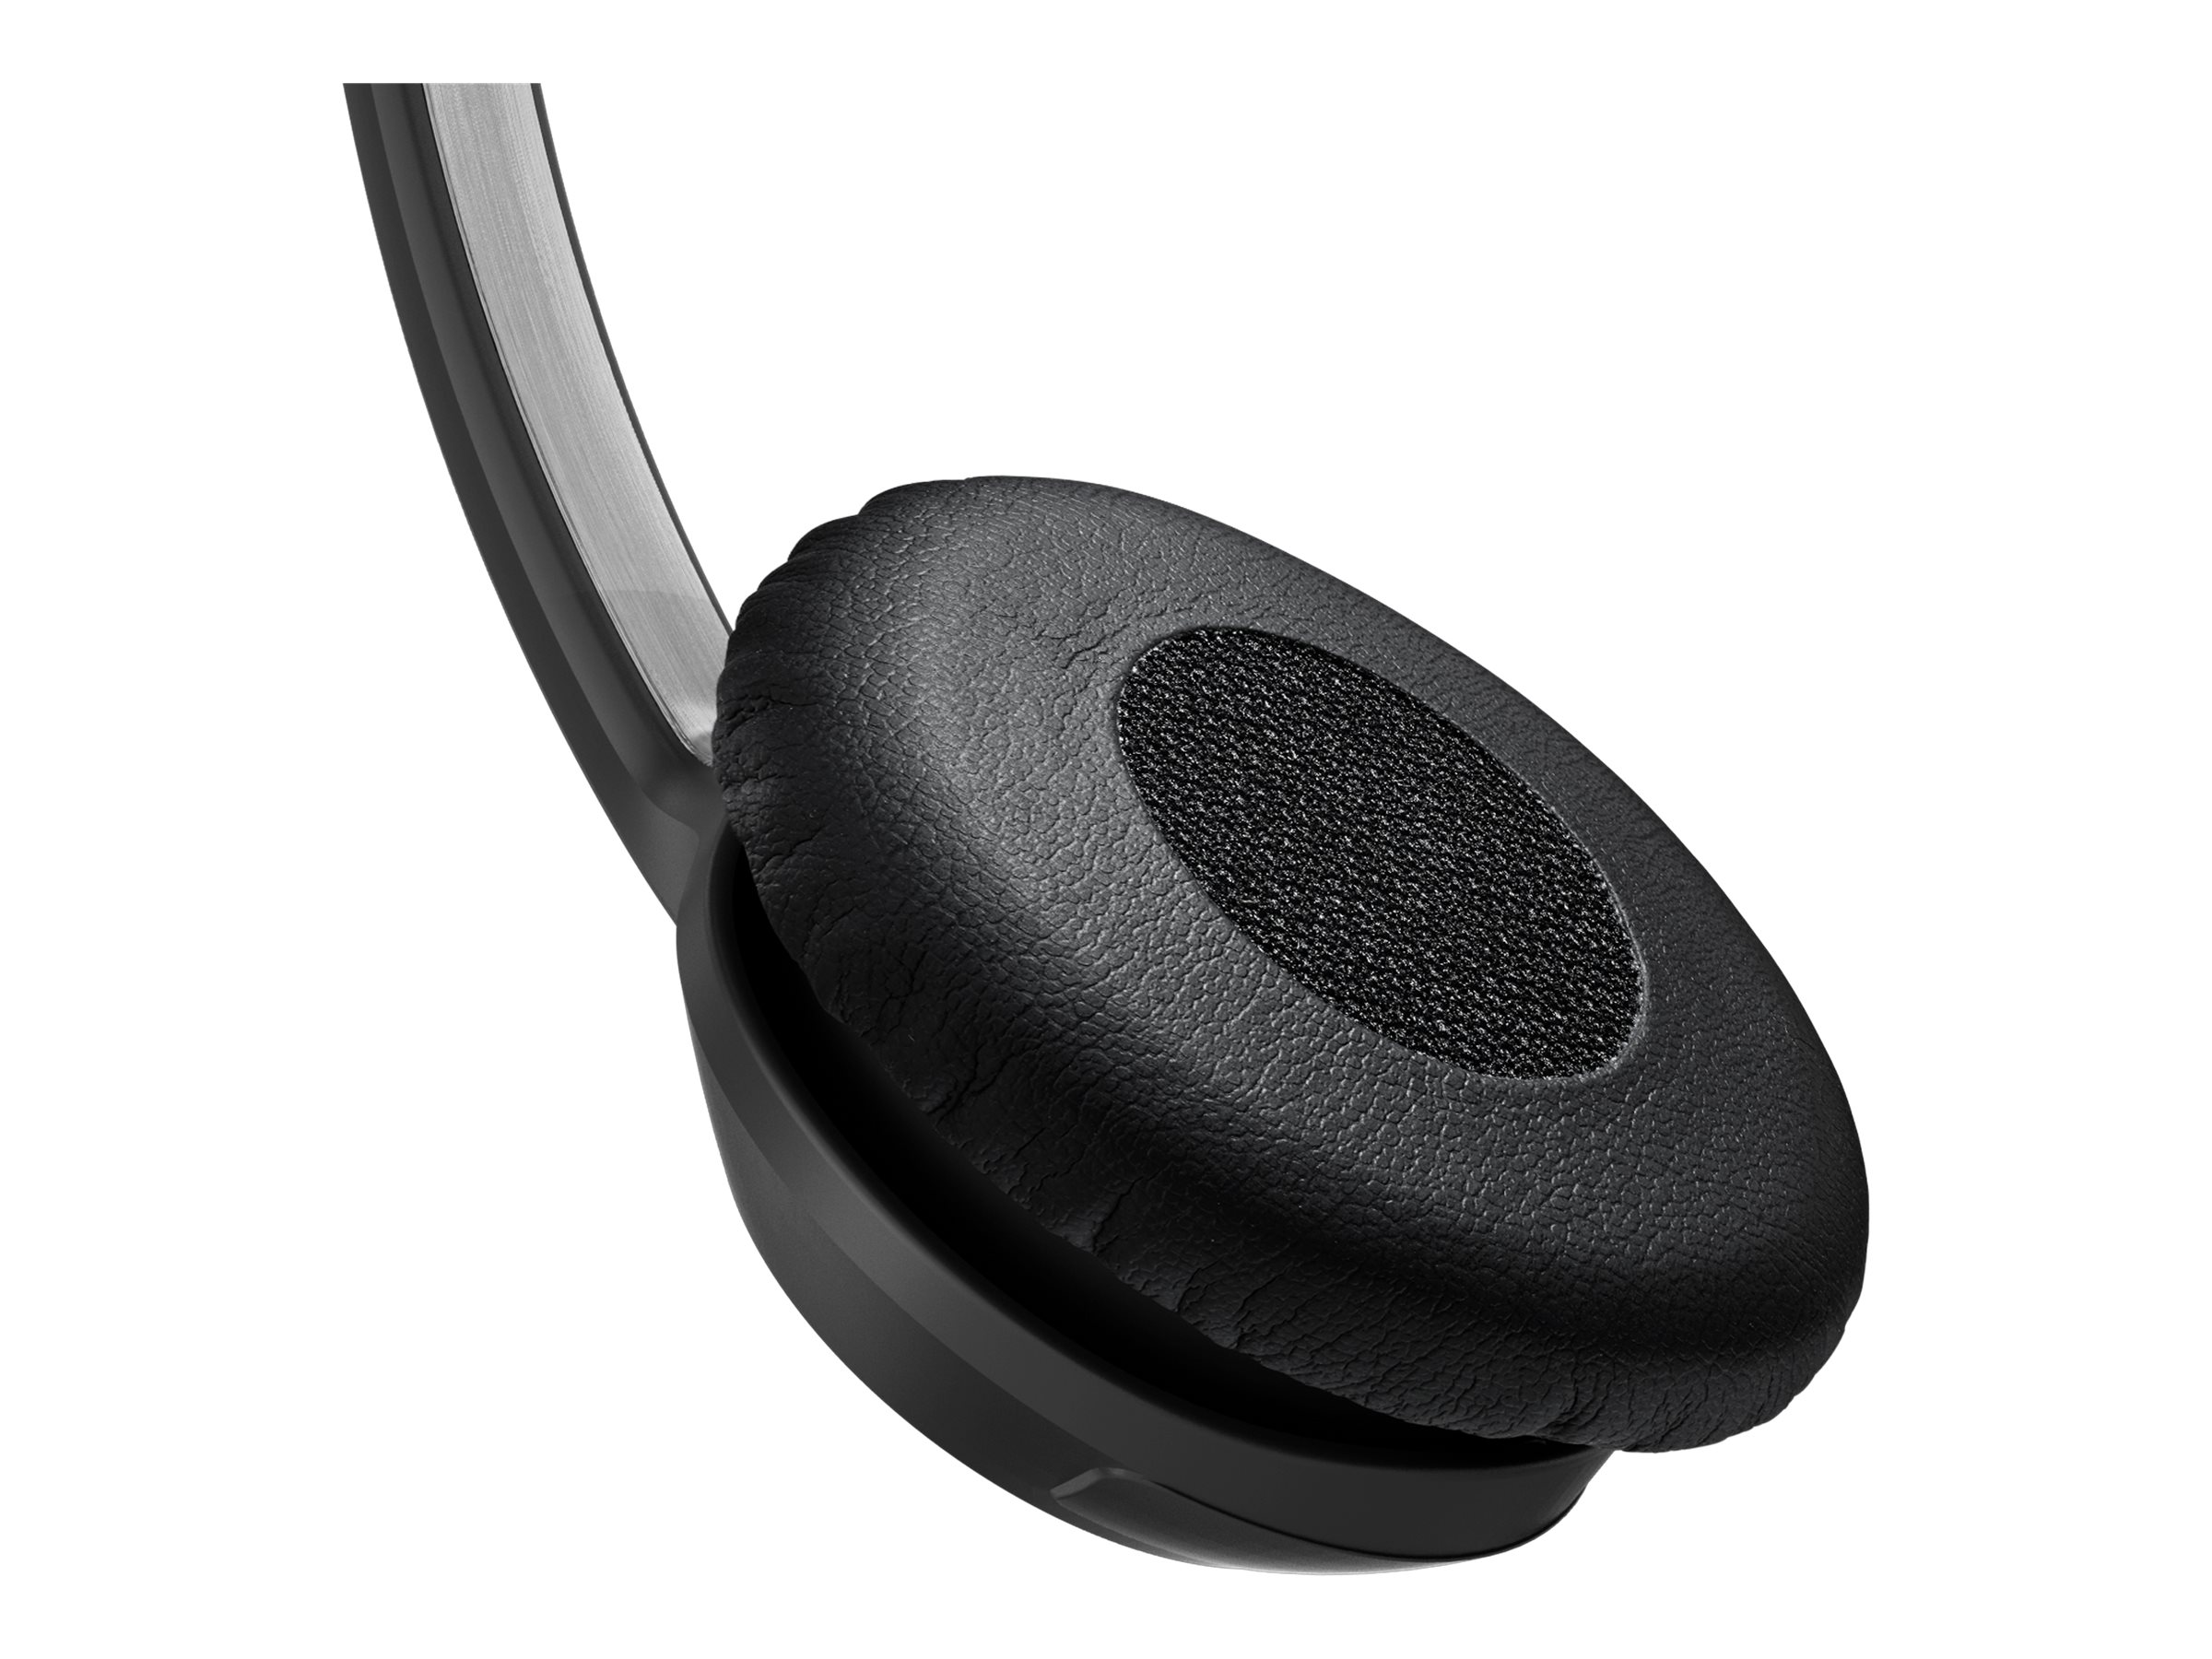 EPOS IMPACT SC 230 - Série 200 - micro-casque - sur-oreille - filaire - Easy Disconnect - noir, argent, noir et argent - 1000514 - Écouteurs